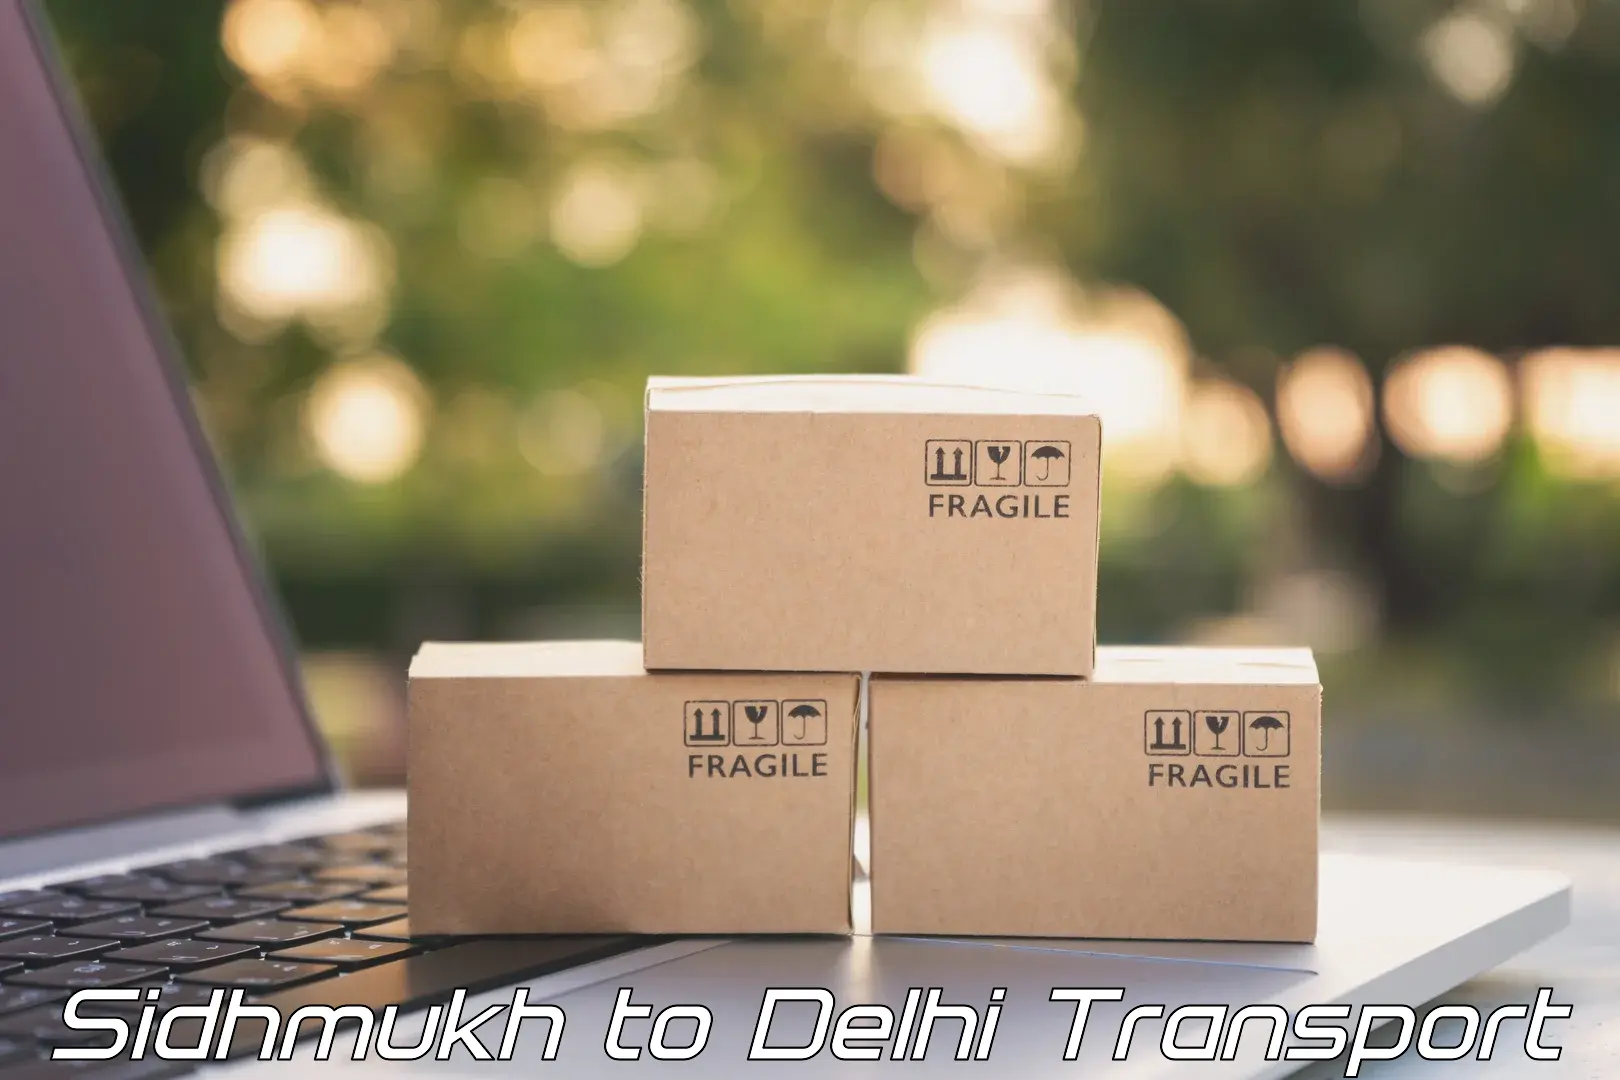 Interstate transport services Sidhmukh to Delhi Technological University DTU